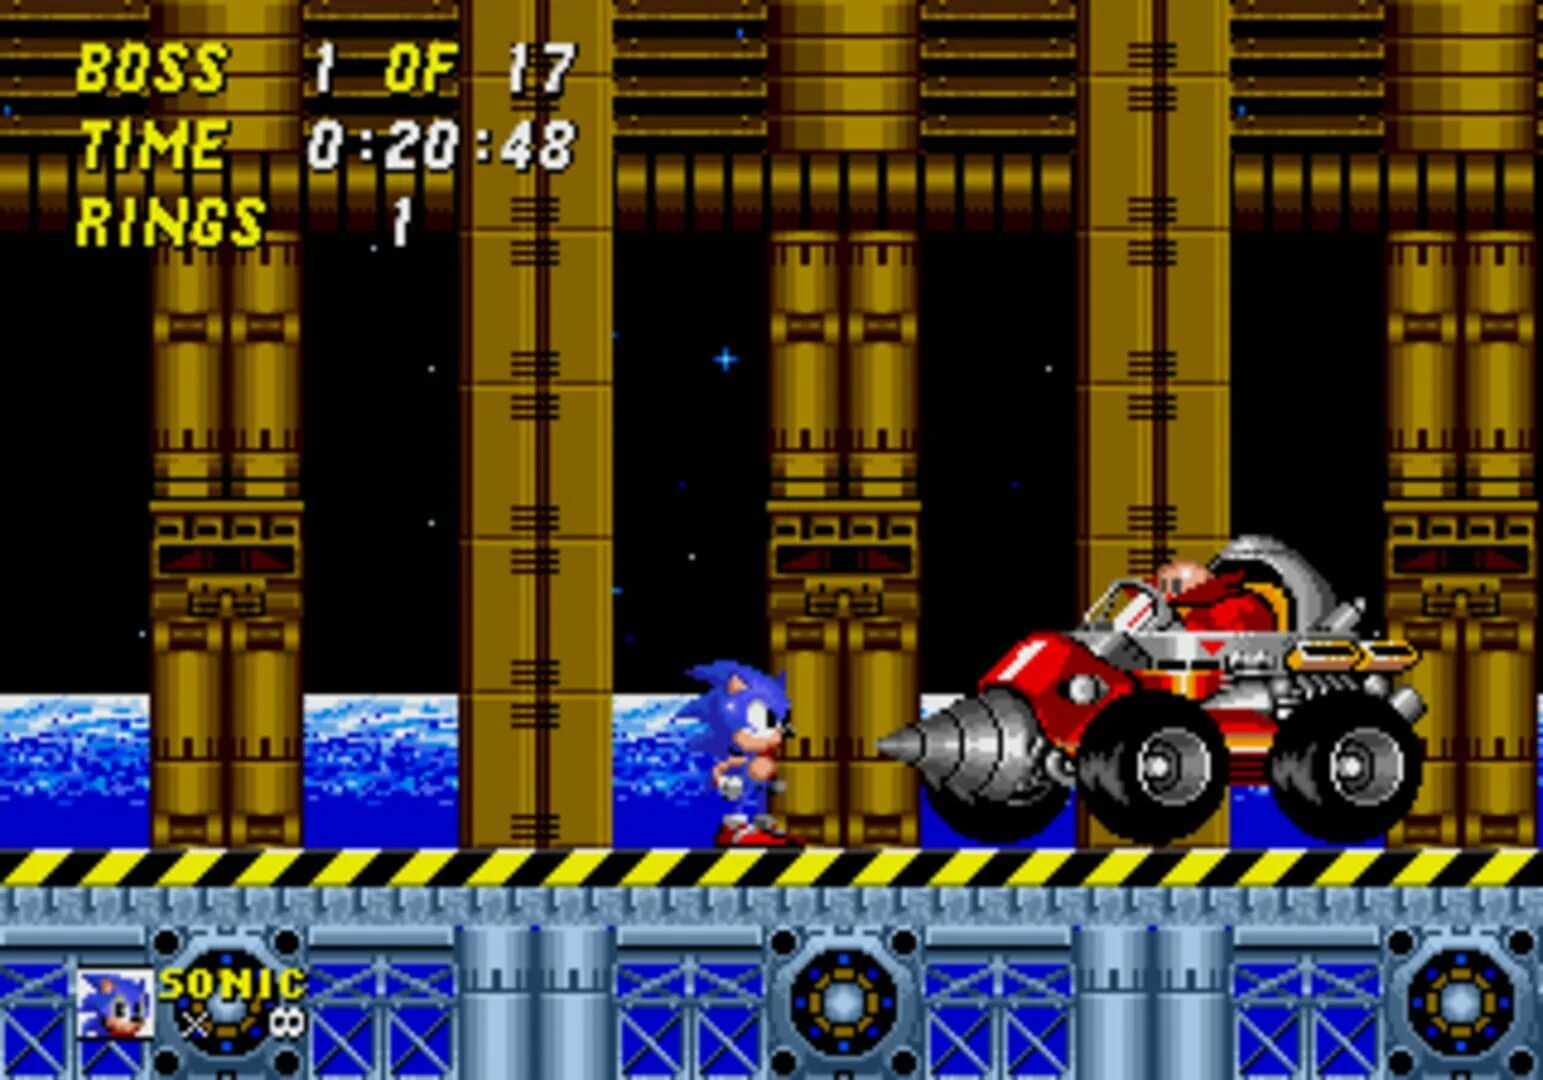 Sonic robotnik revenge. Sonic 2 Robotnik s Revenge. Игра Robotnik s Revenge super Sonic. Доктор Роботник из игры Sonic 2 Sega. Супер Соник месть работника.